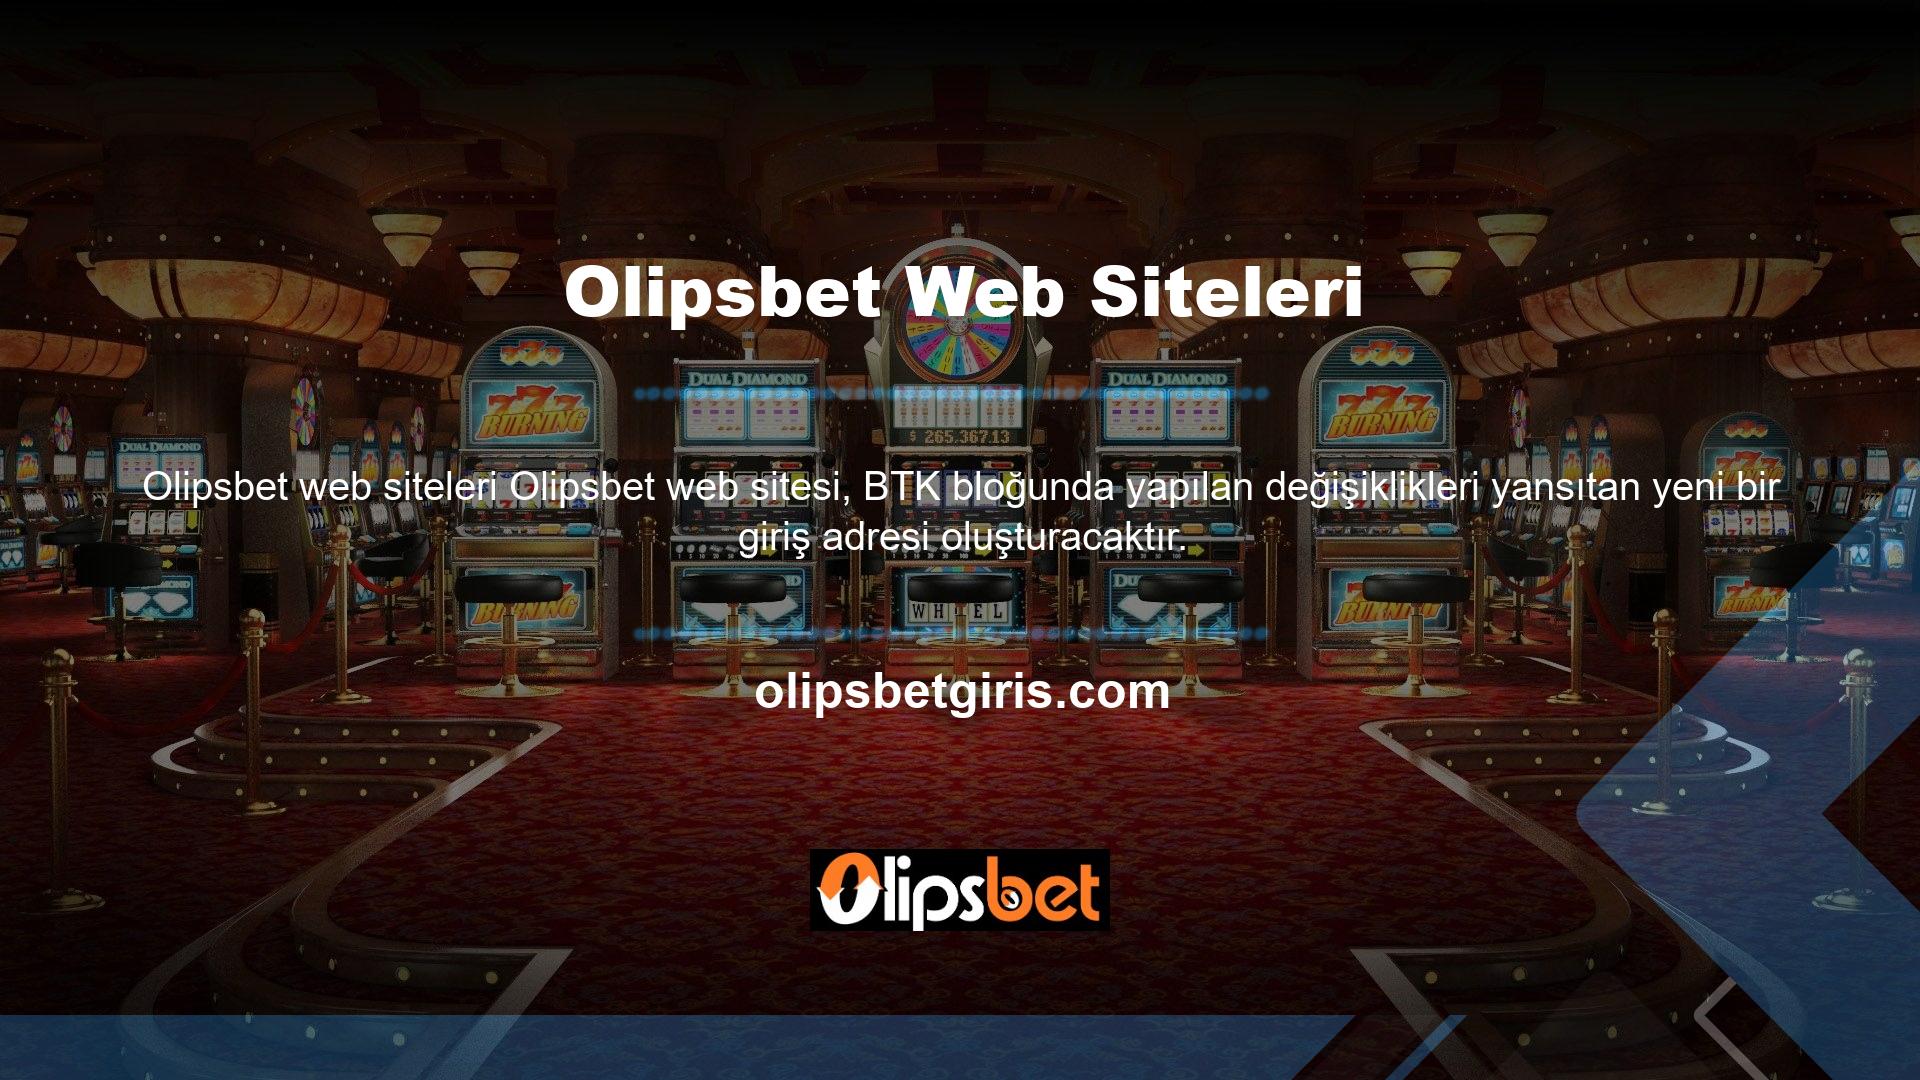 Olipsbet yeni giriş adresi Olipsbet olarak belirlenecektir